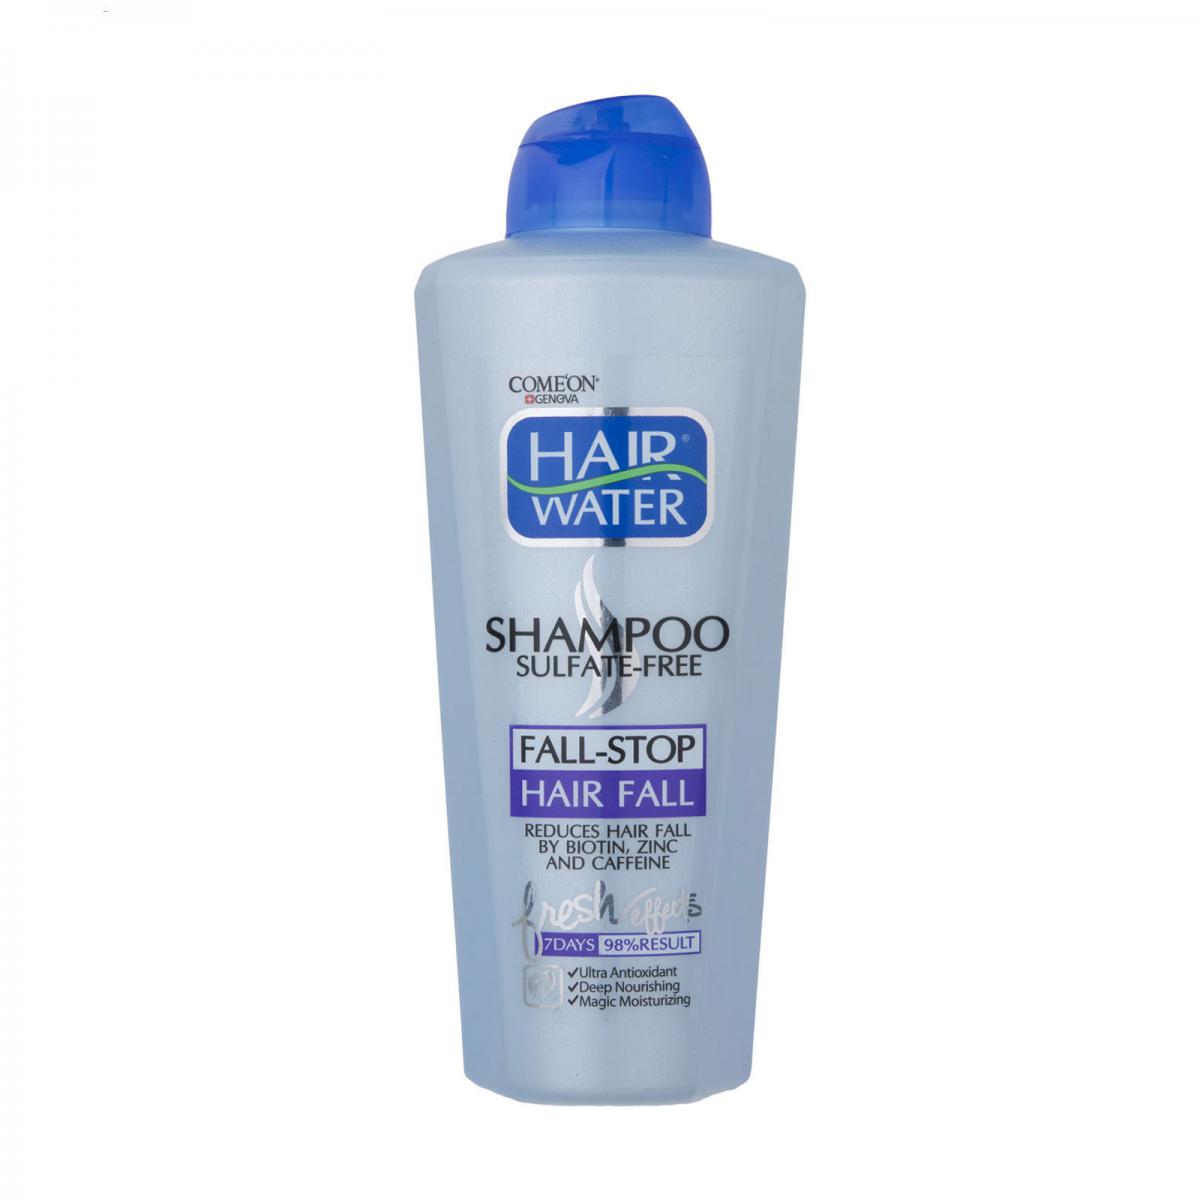 شامپو ضد ریزش مدل Hair Water حجم 400 میل - Comeon Hair Water Fall Stop Shampoo 400ml